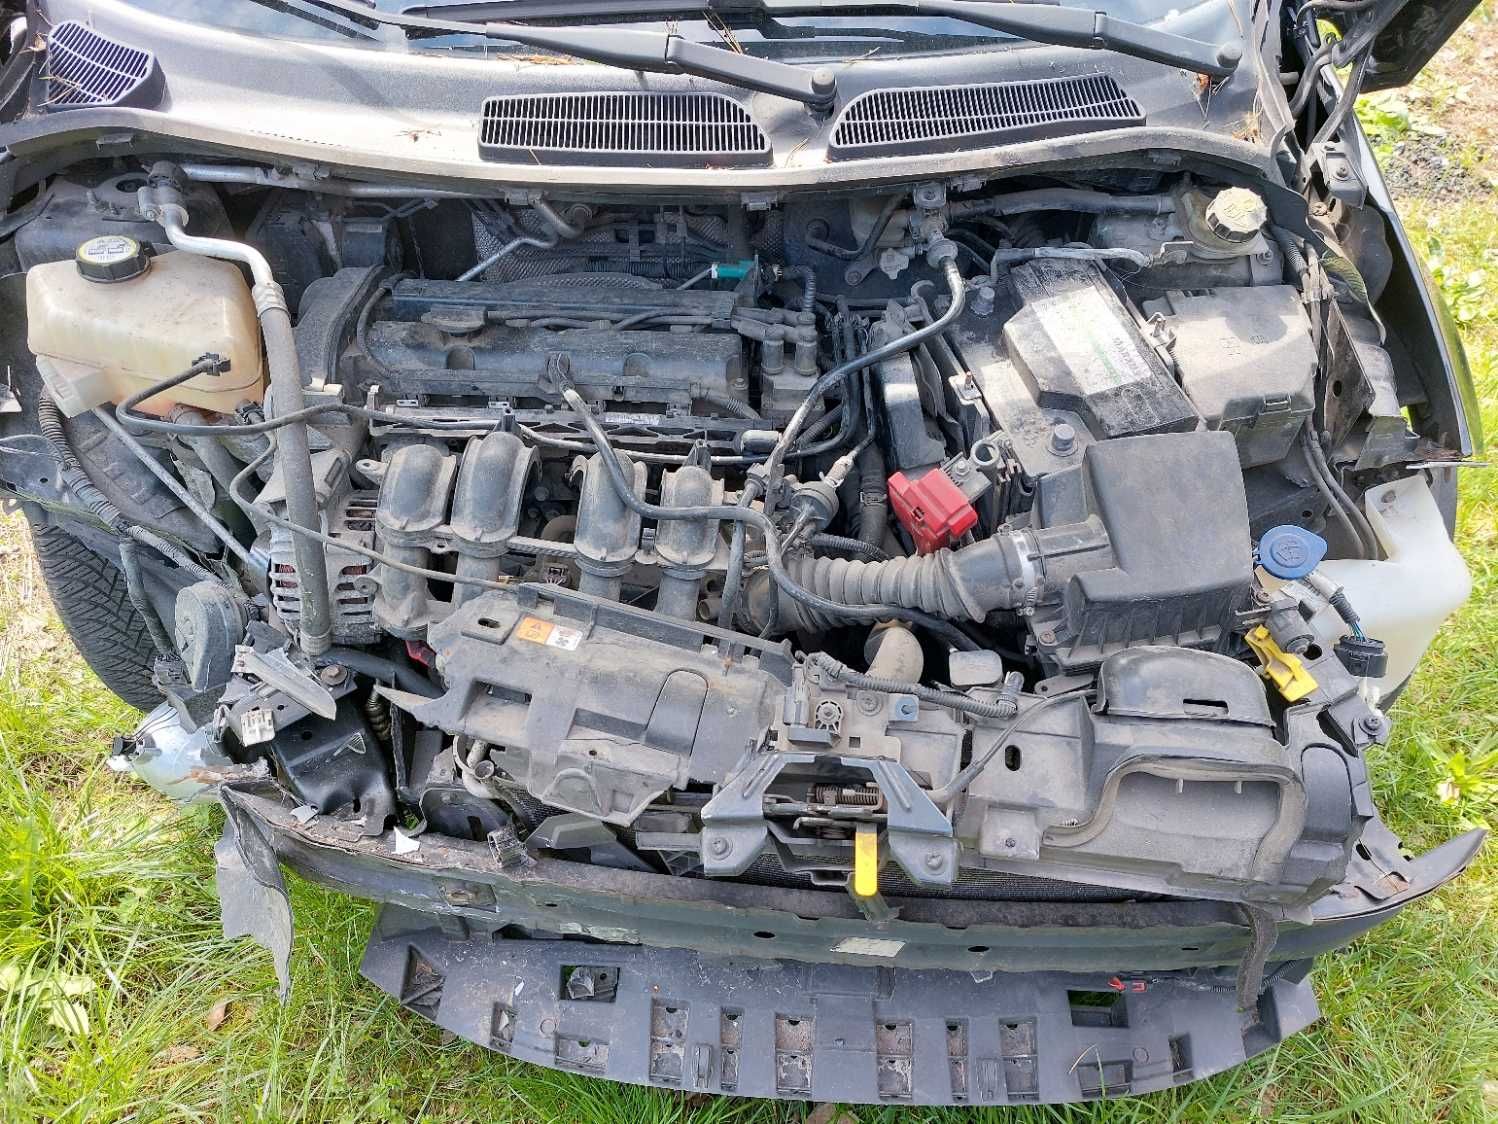 Ford Fiesta 1.2 benzyna 82 KM uszkodzony